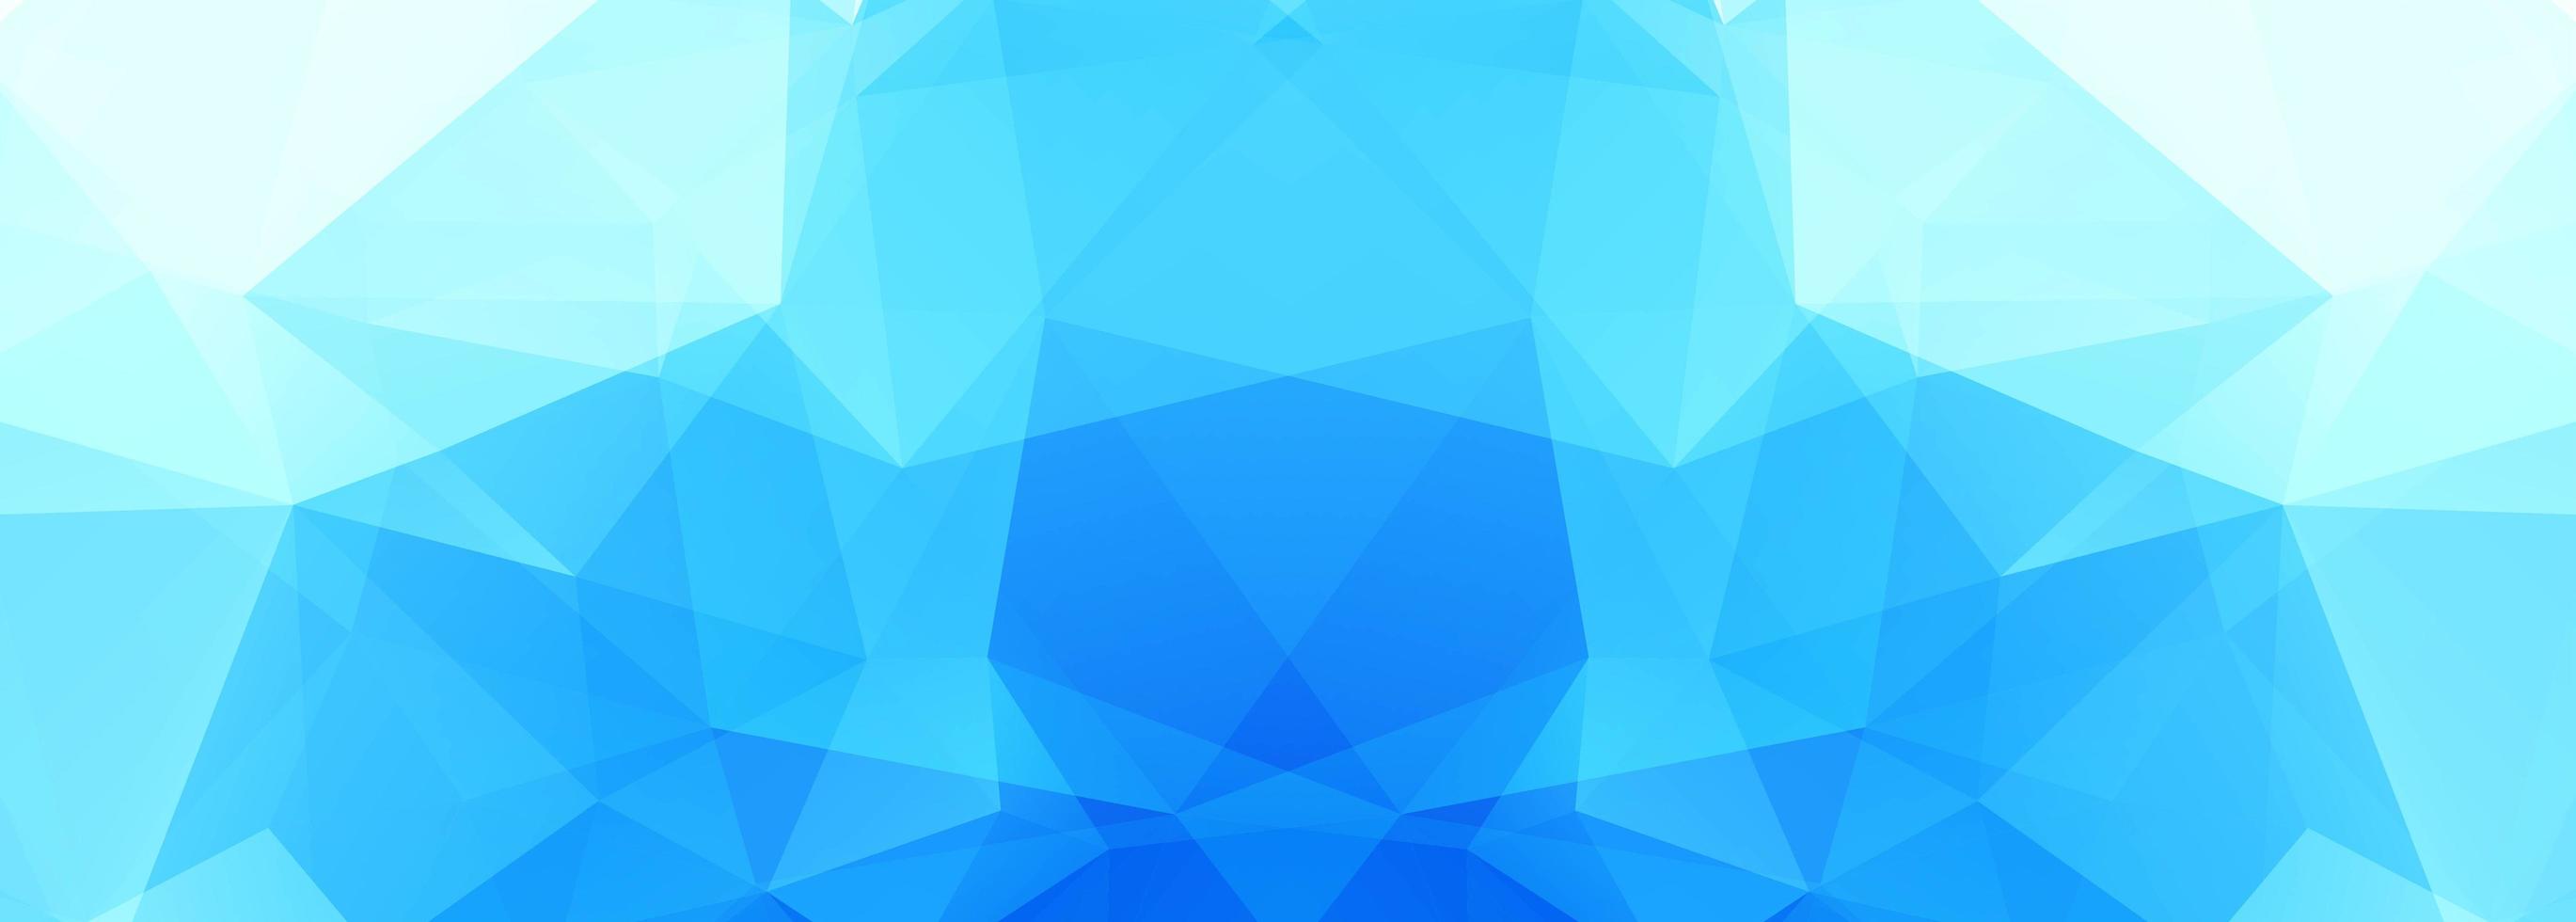 moderne blauwe veelhoekbanner vector